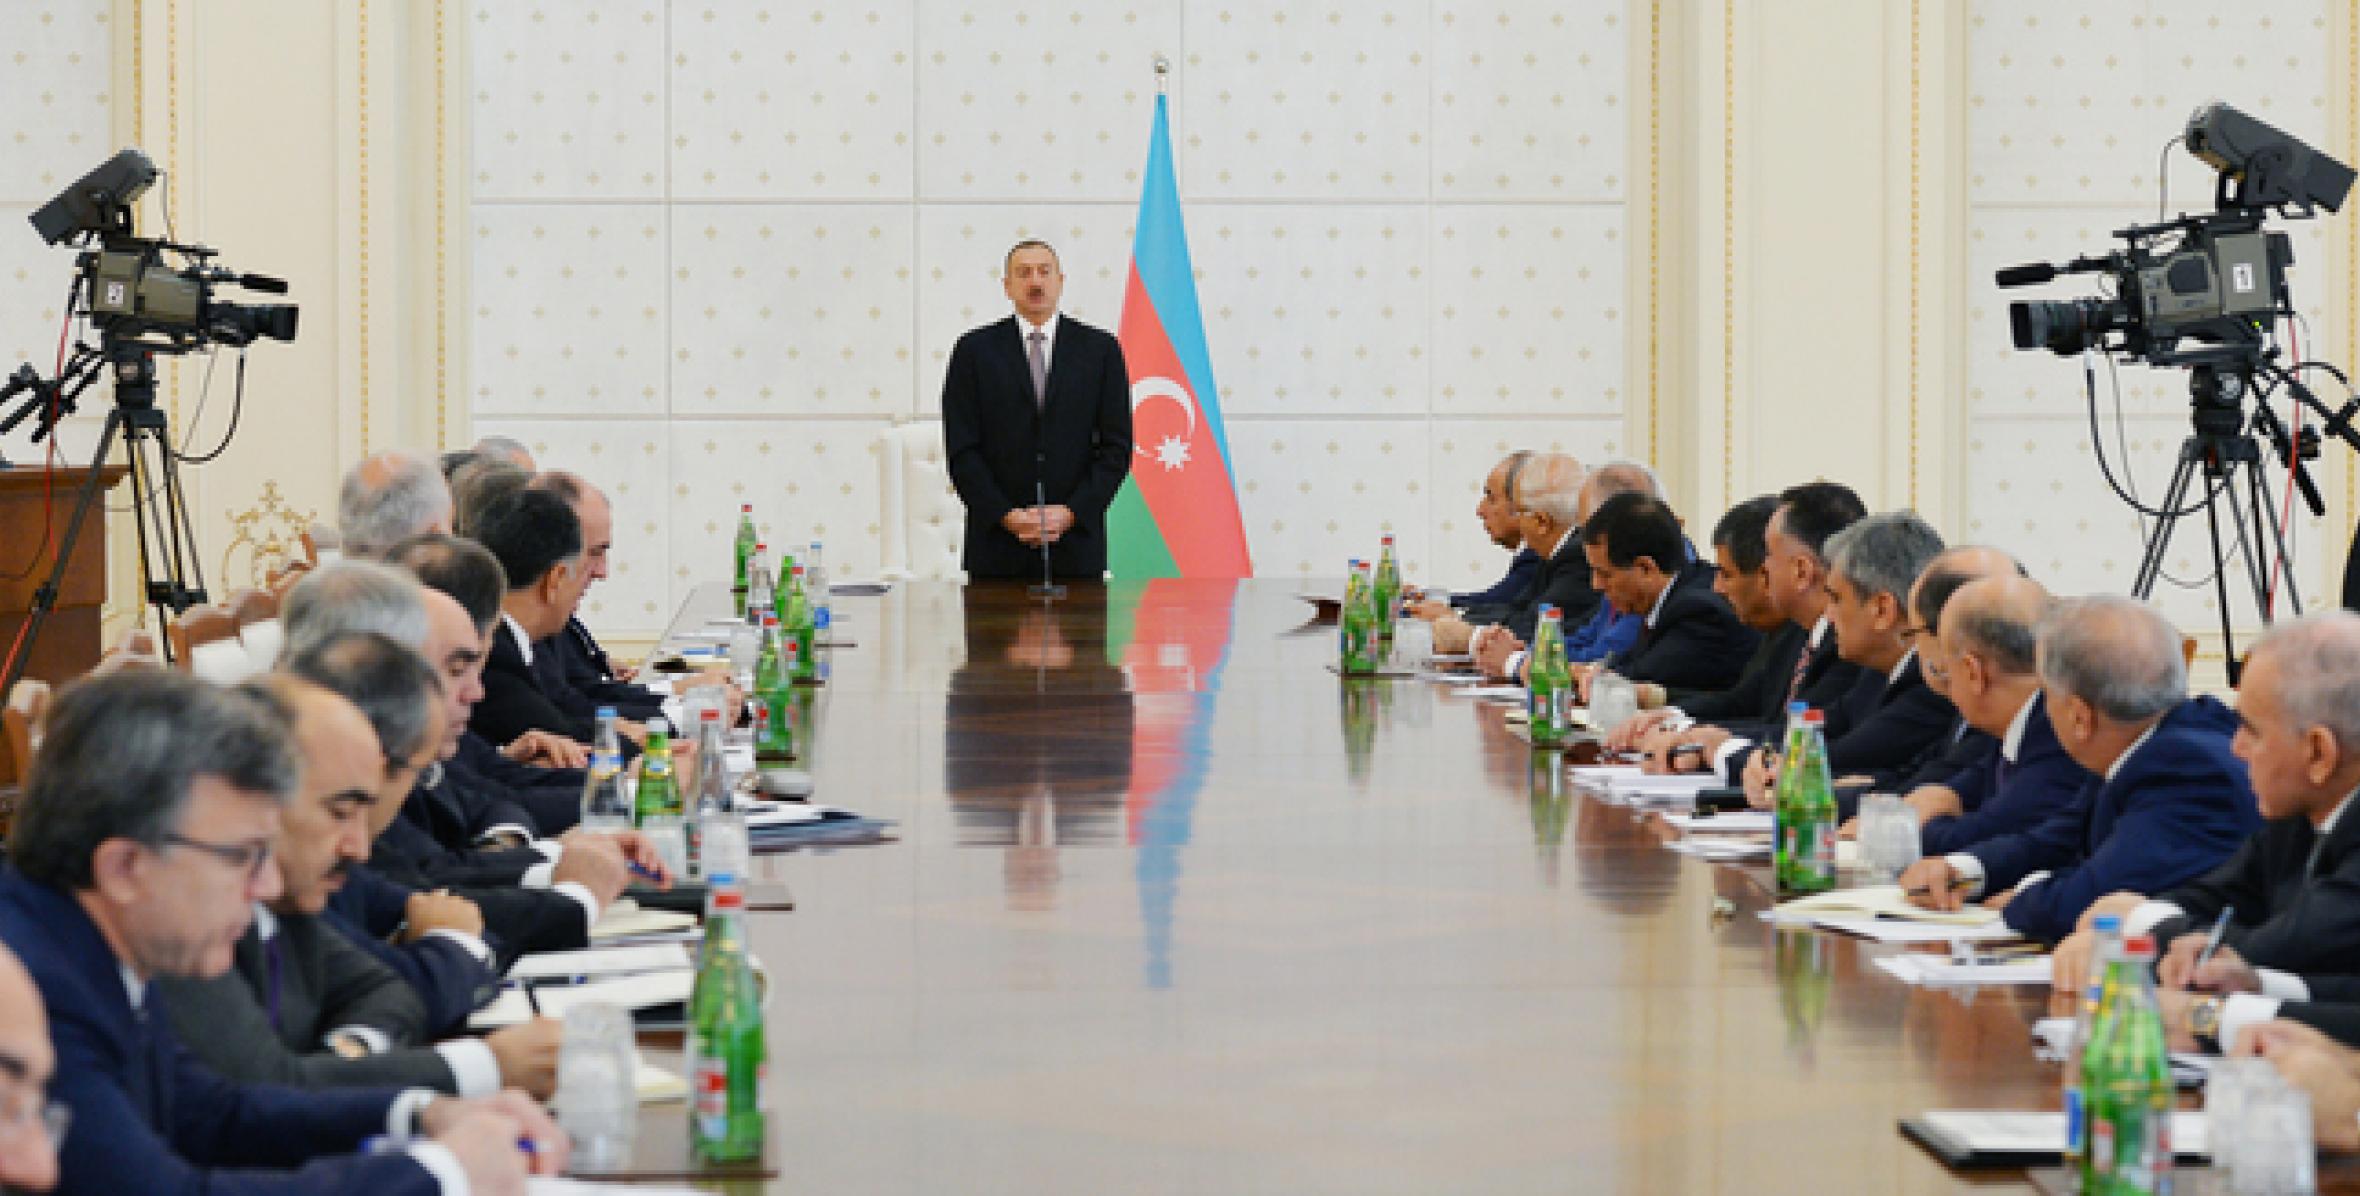 Вступительная речь Ильхама Алиева на заседании Кабинета Министров, посвященное итогам социально-экономического развития за девять месяцев 2015 года и предстоящим задачам